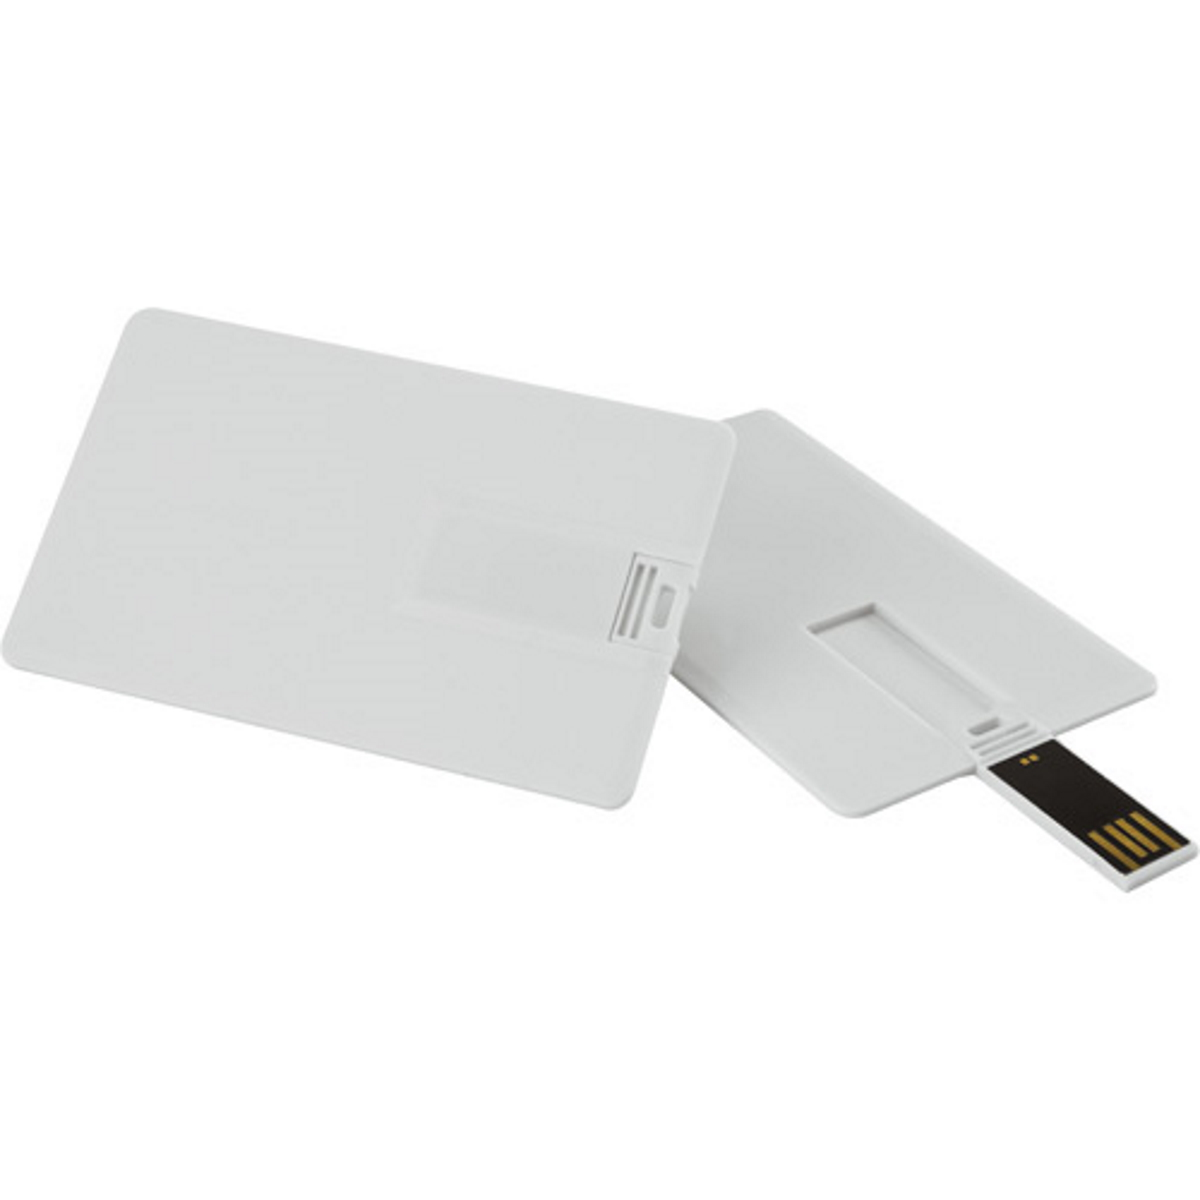 USB GERMANY ® Kreditkarte USB-Stick (Weiss, GB) 4